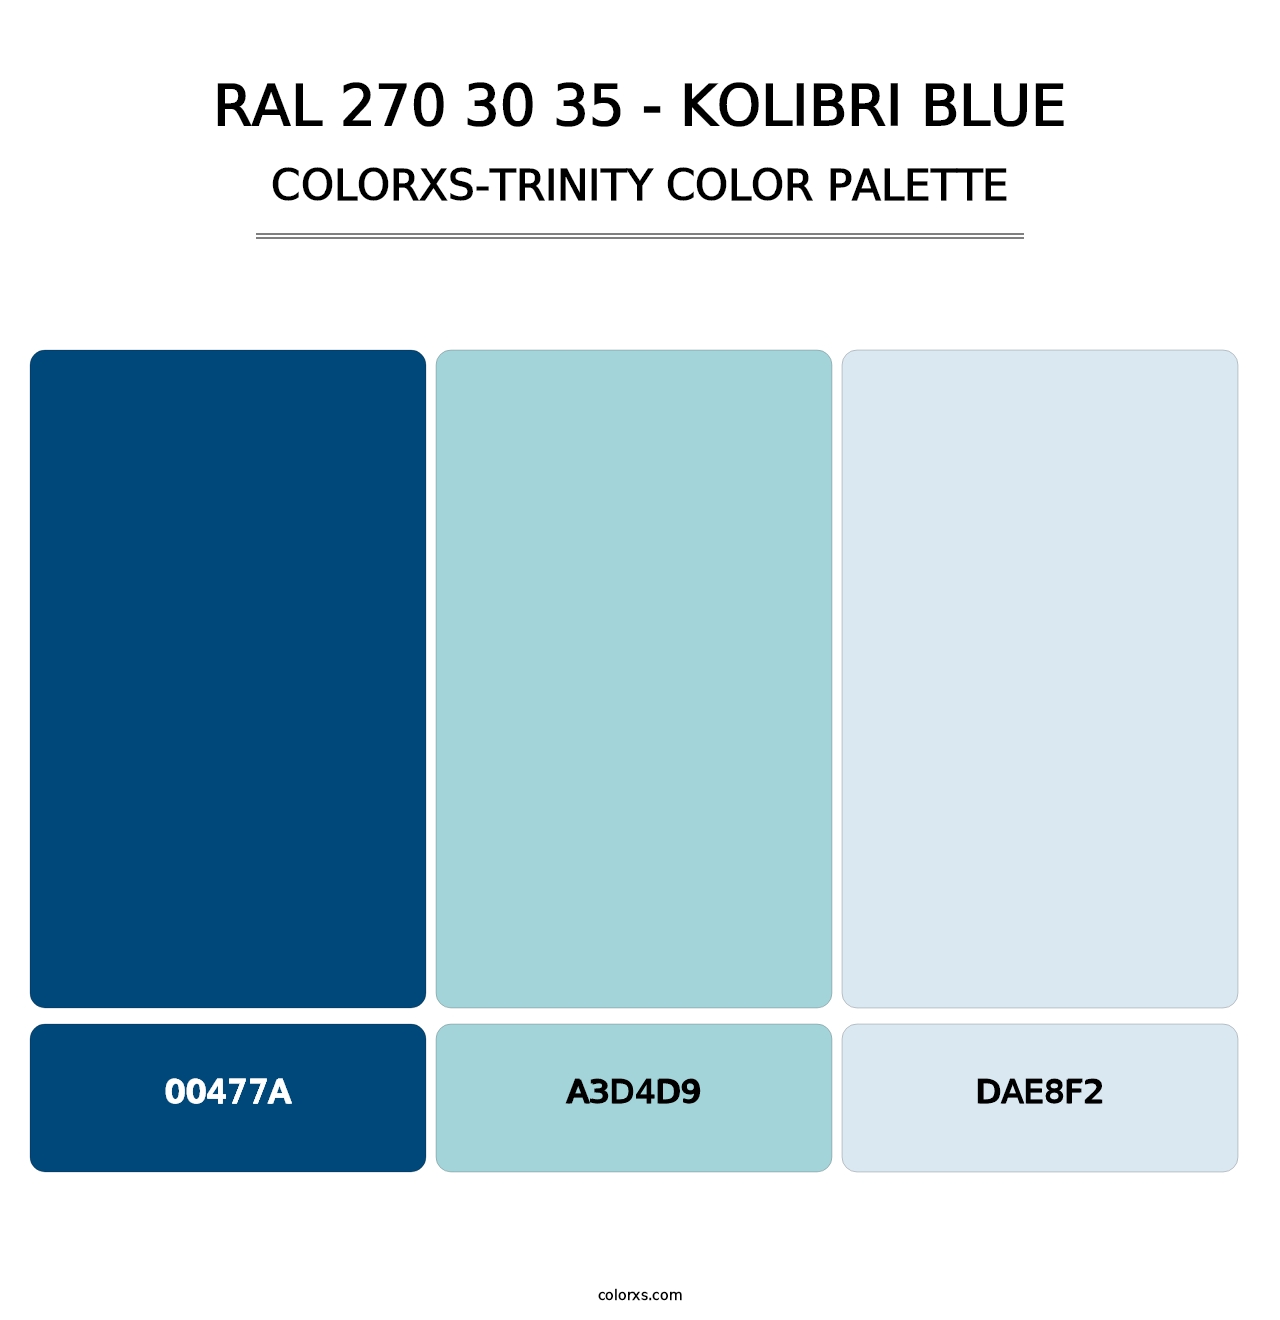 RAL 270 30 35 - Kolibri Blue - Colorxs Trinity Palette